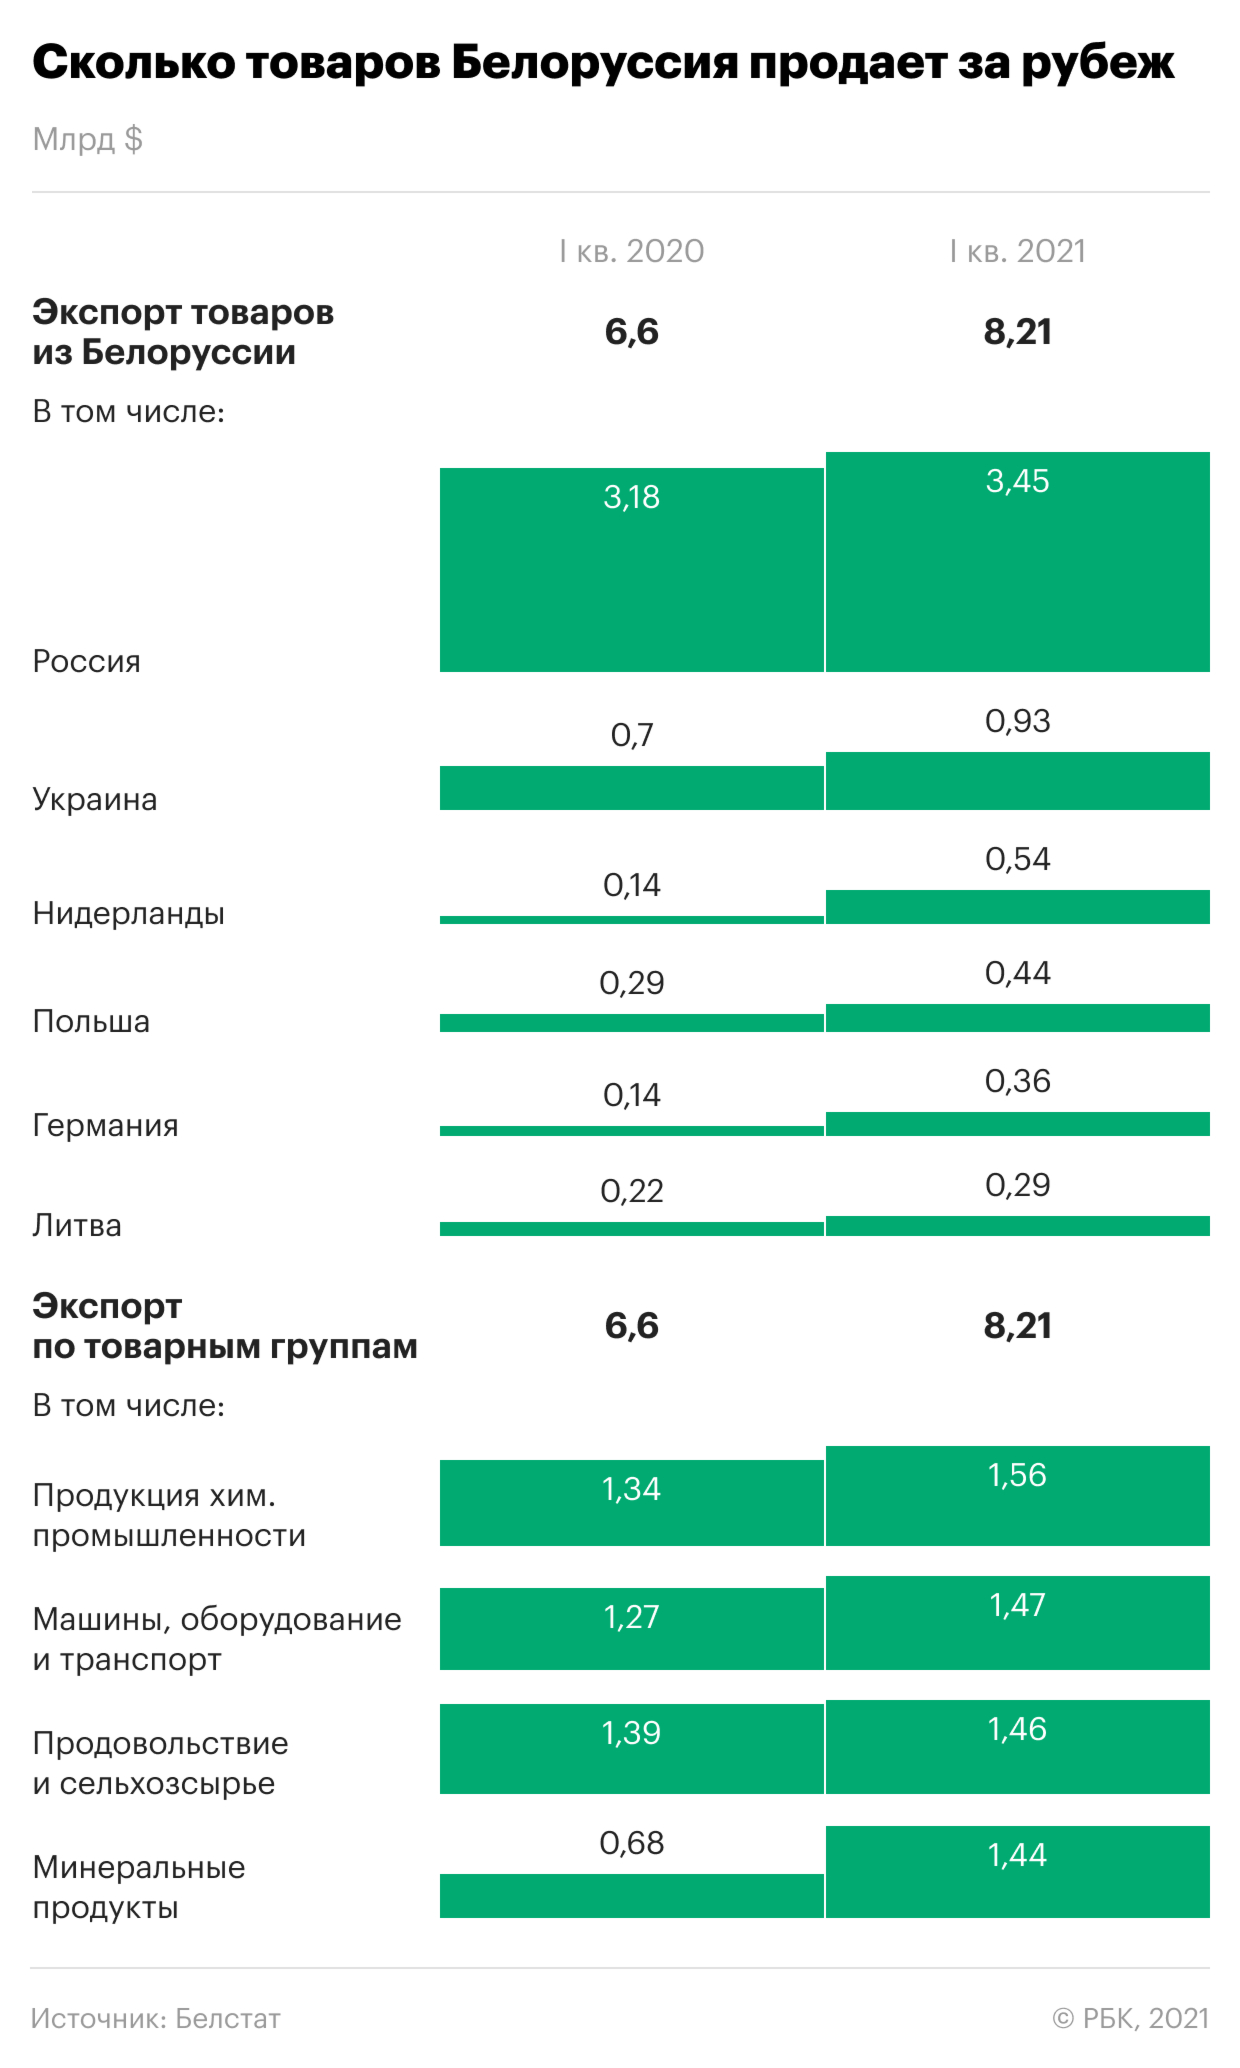 Как экономически связаны Белоруссия и Запад. Инфографика